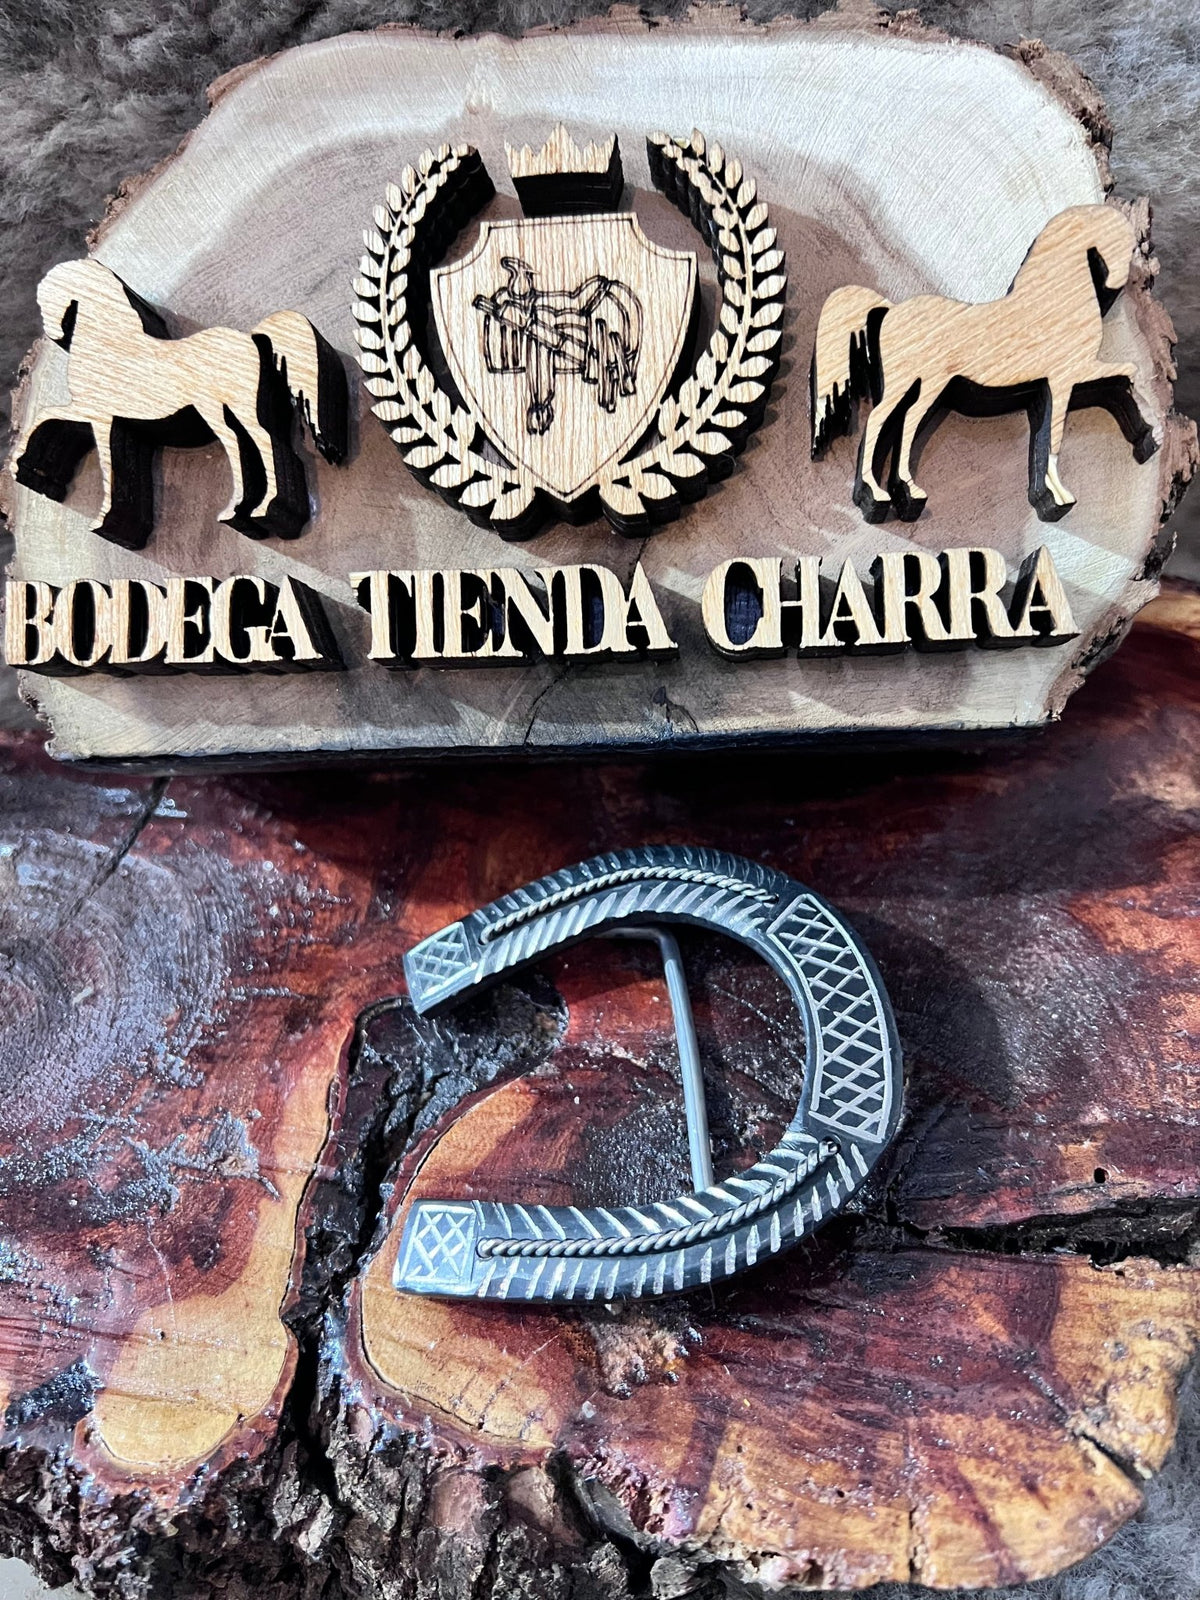 Hebilla modelo herradura pavón negro - Tiendacharra.com - Bodega Tienda Charra